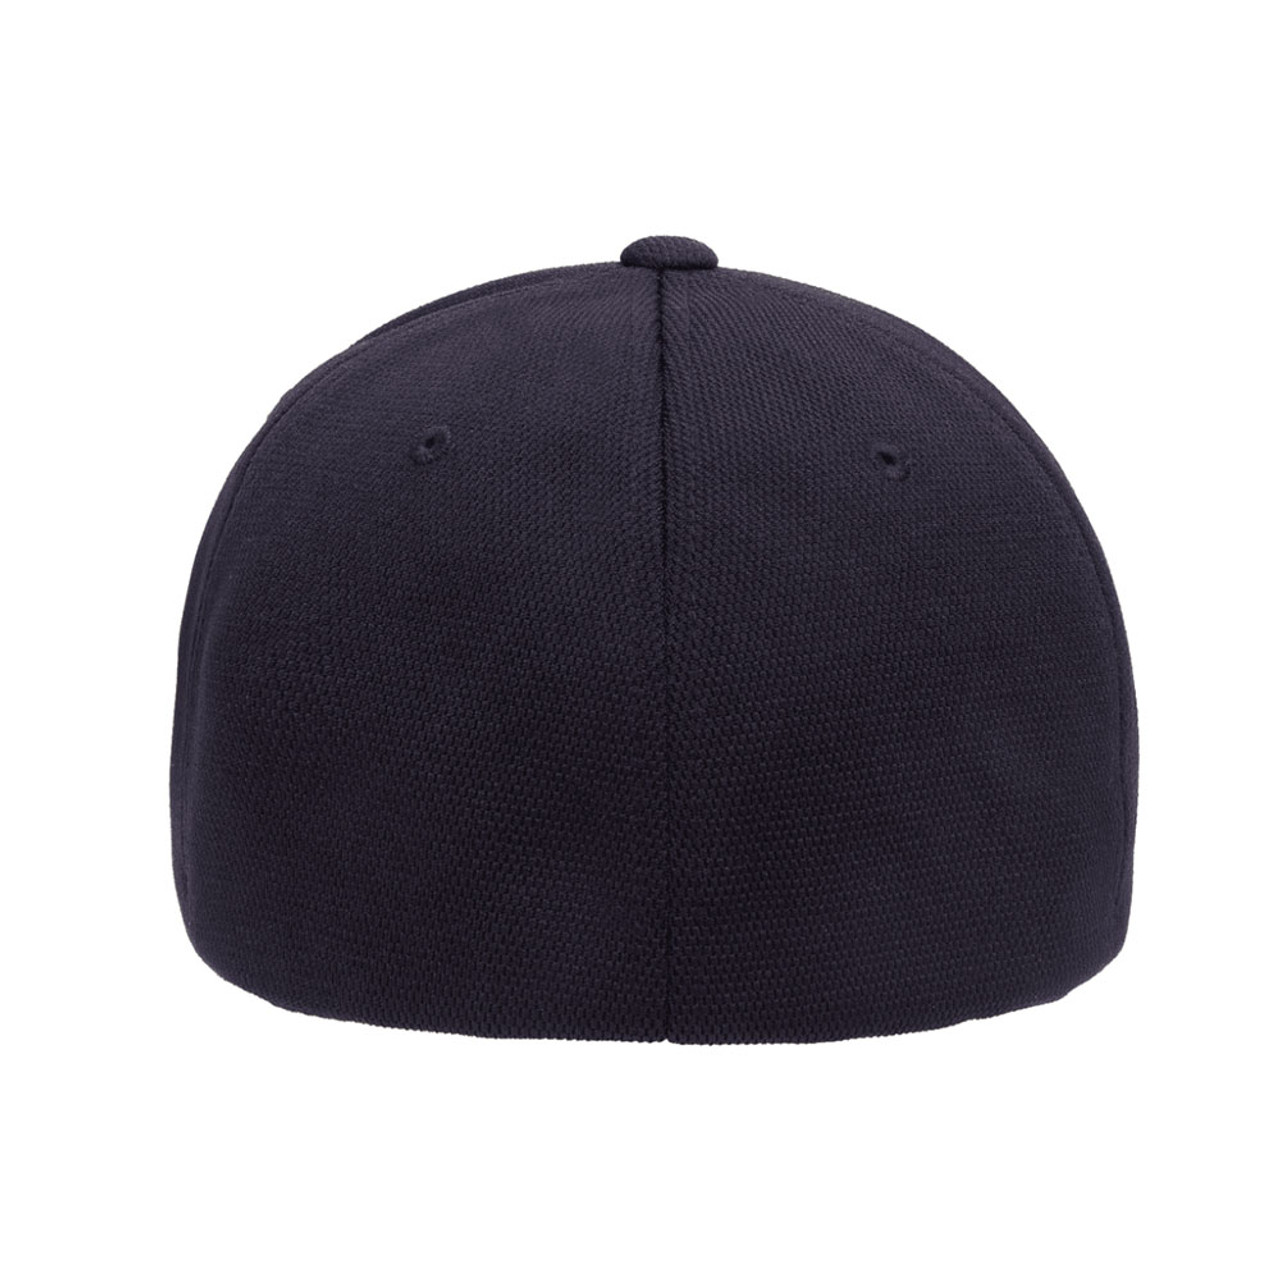 The - Dry Cap Performance Hat One Jac | Dozen Cool Flexfit &